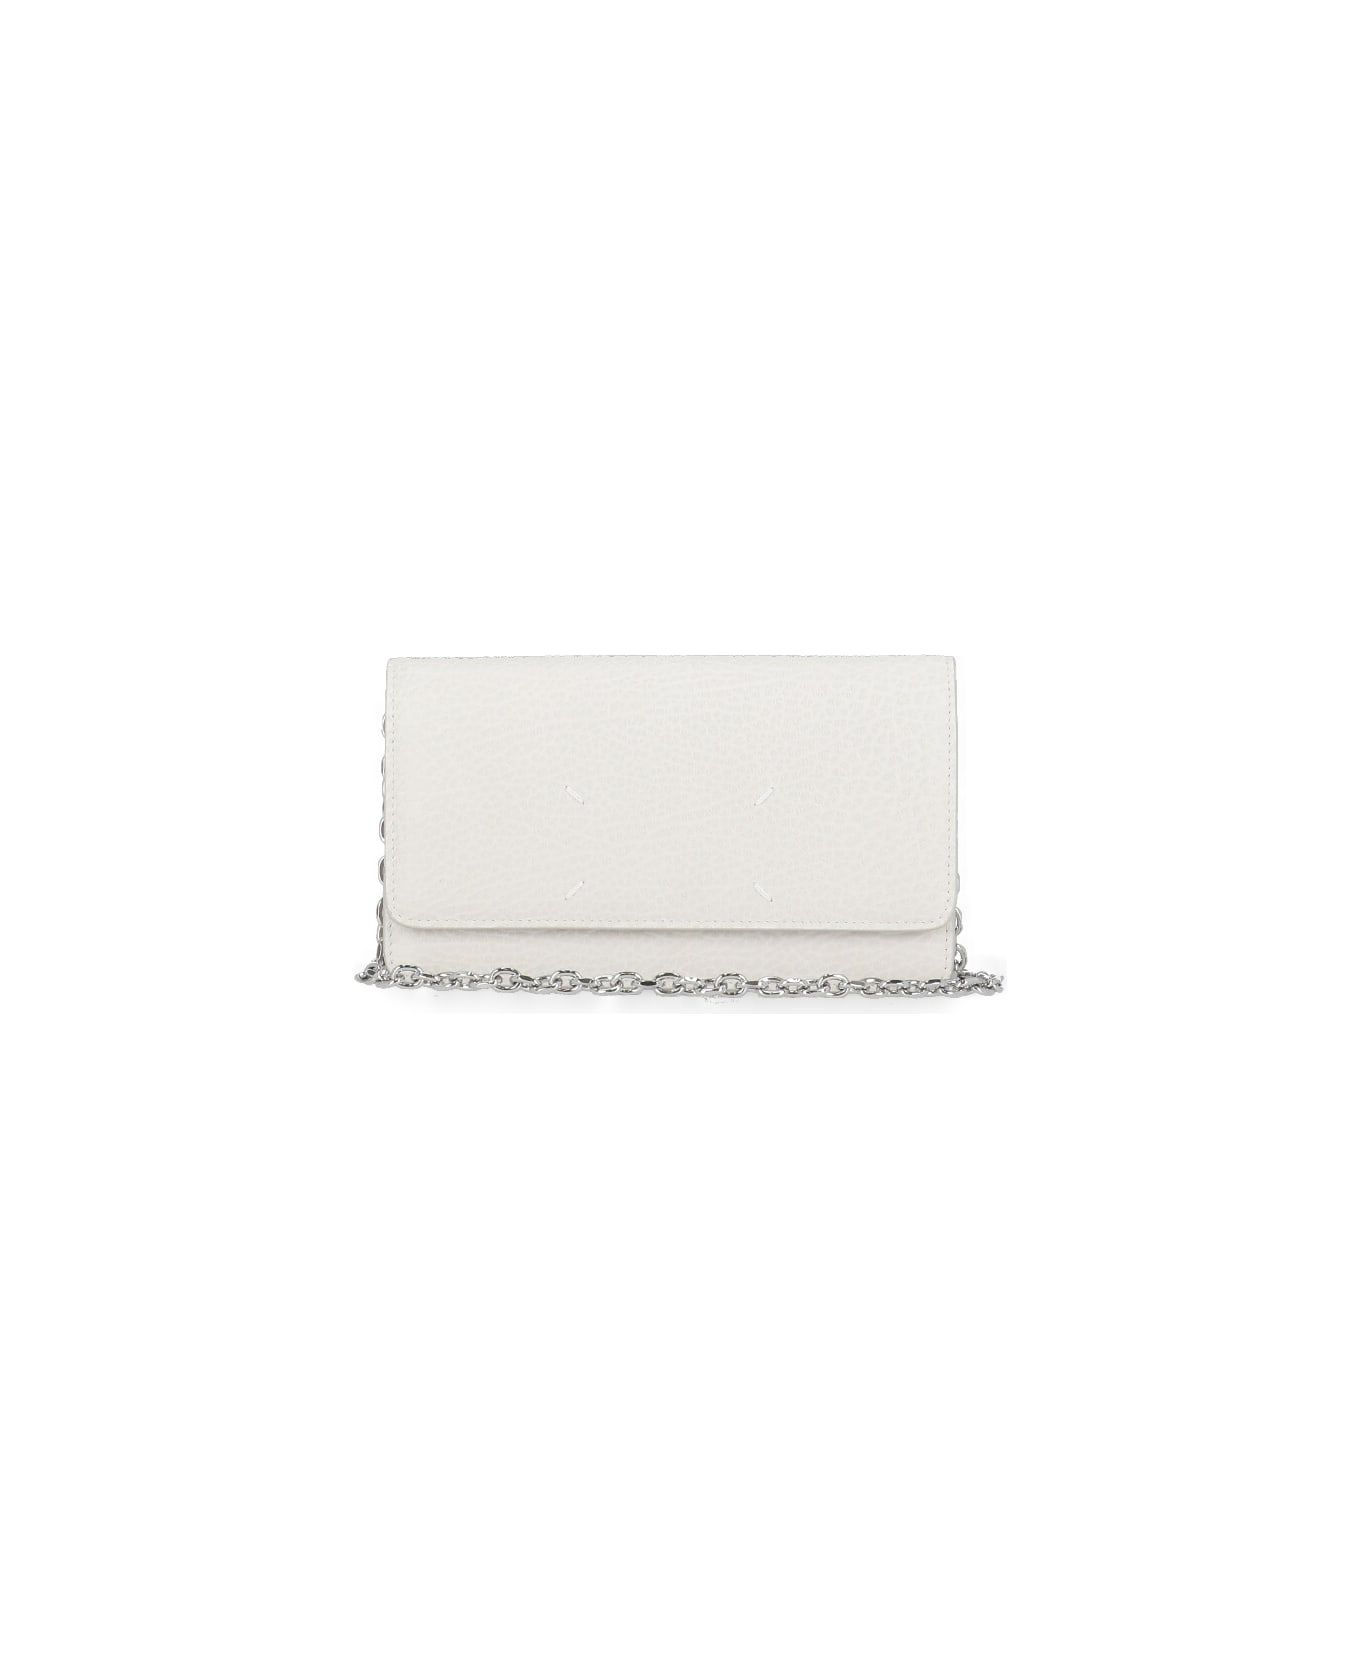 Maison Margiela Four Stitches Wallet - White